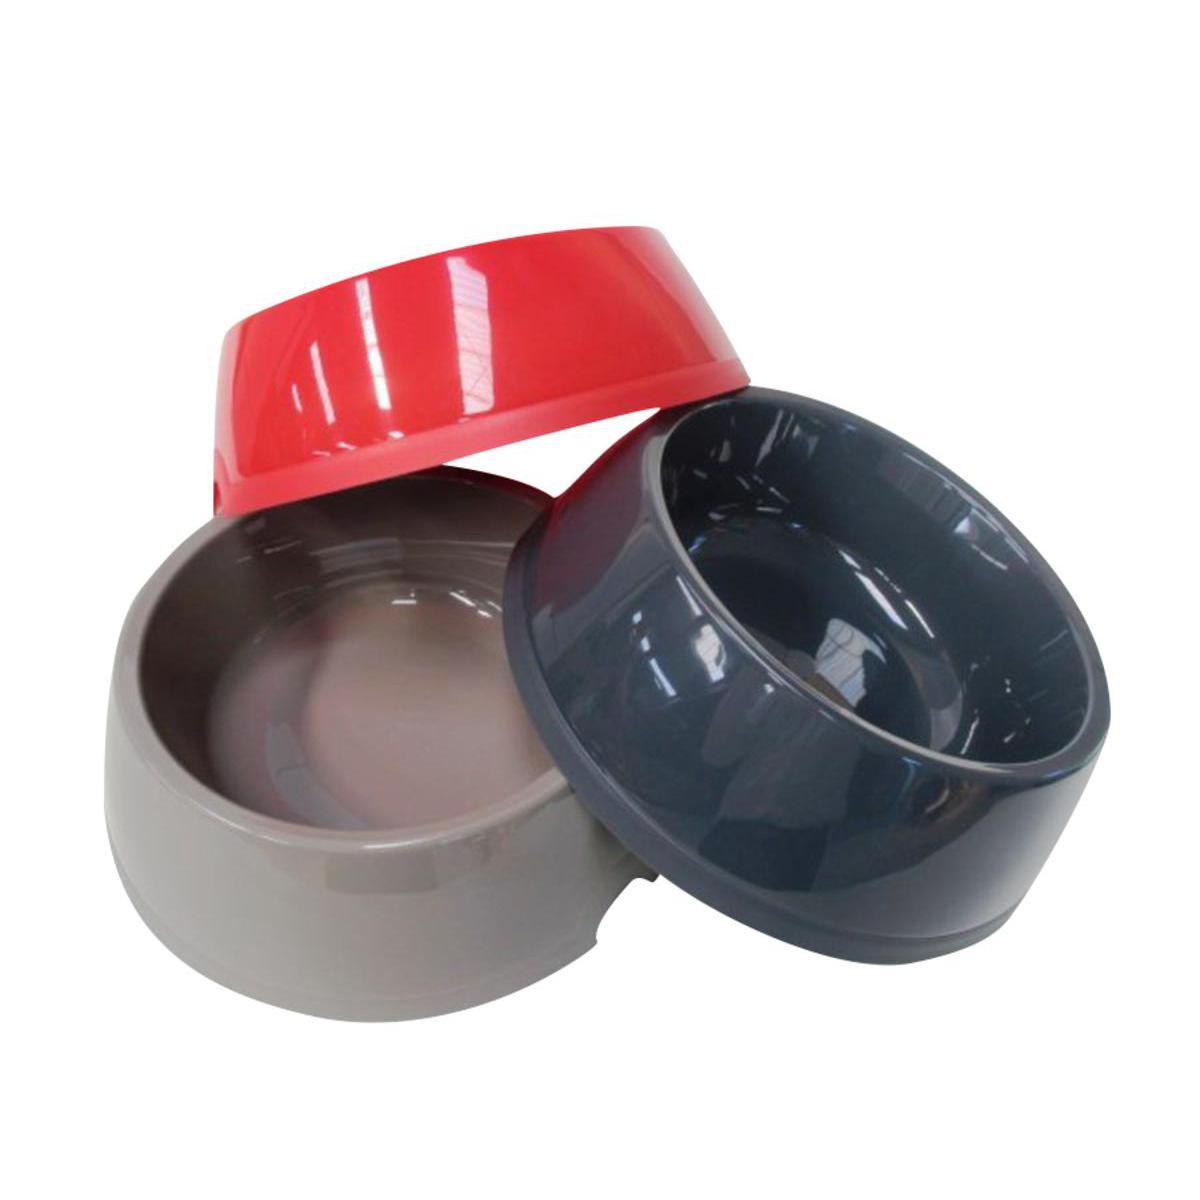 Gamelle - Plastique - D 24 cm - 2,25 L - Rouge, noir ou gris